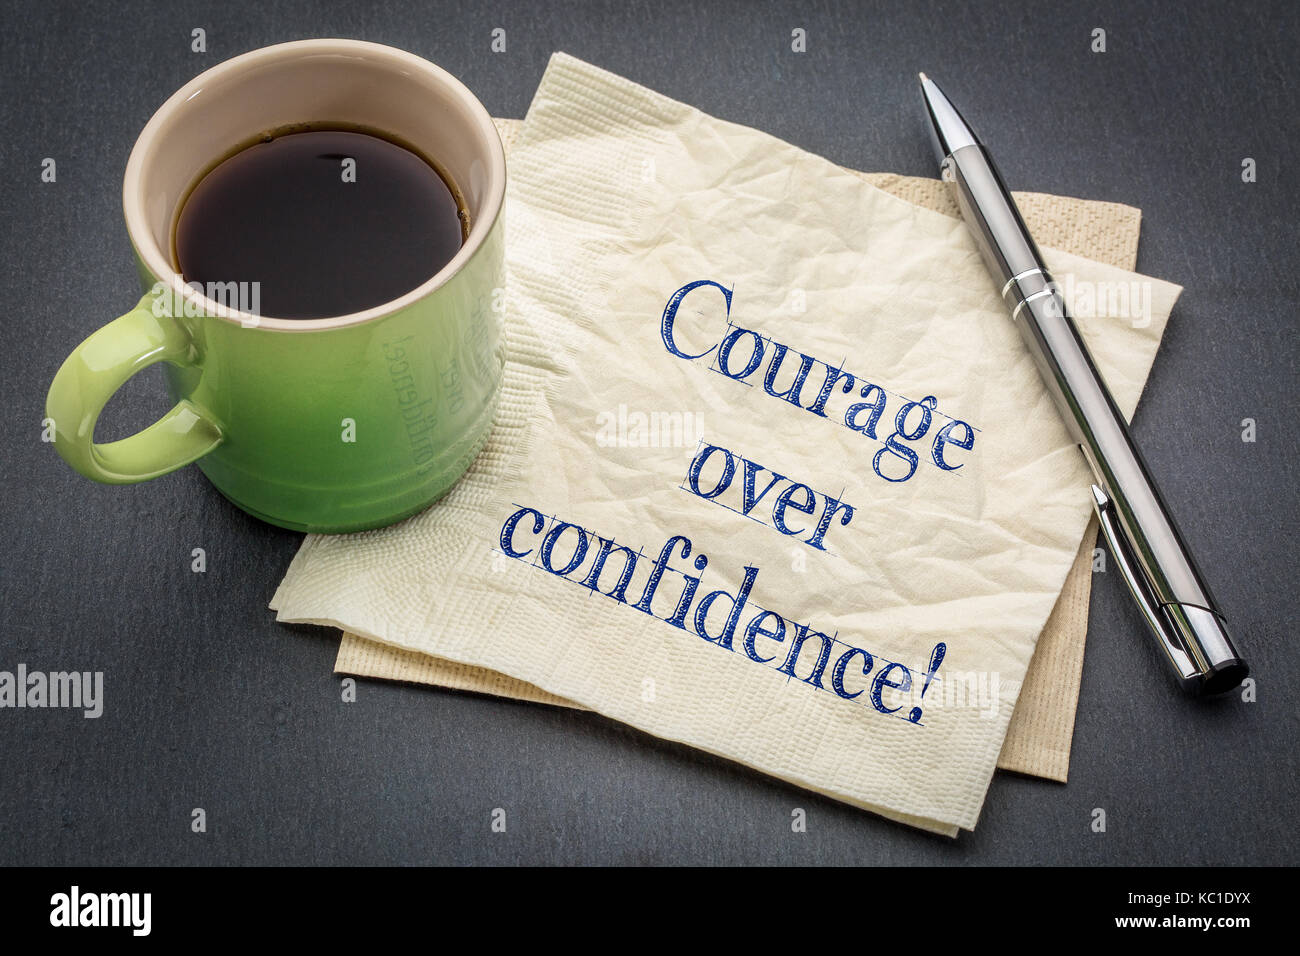 Über vertrauen Mut! Handschrift auf eine Serviette mit Tasse Kaffee gegen grauen Schiefer Hintergrund Stockfoto